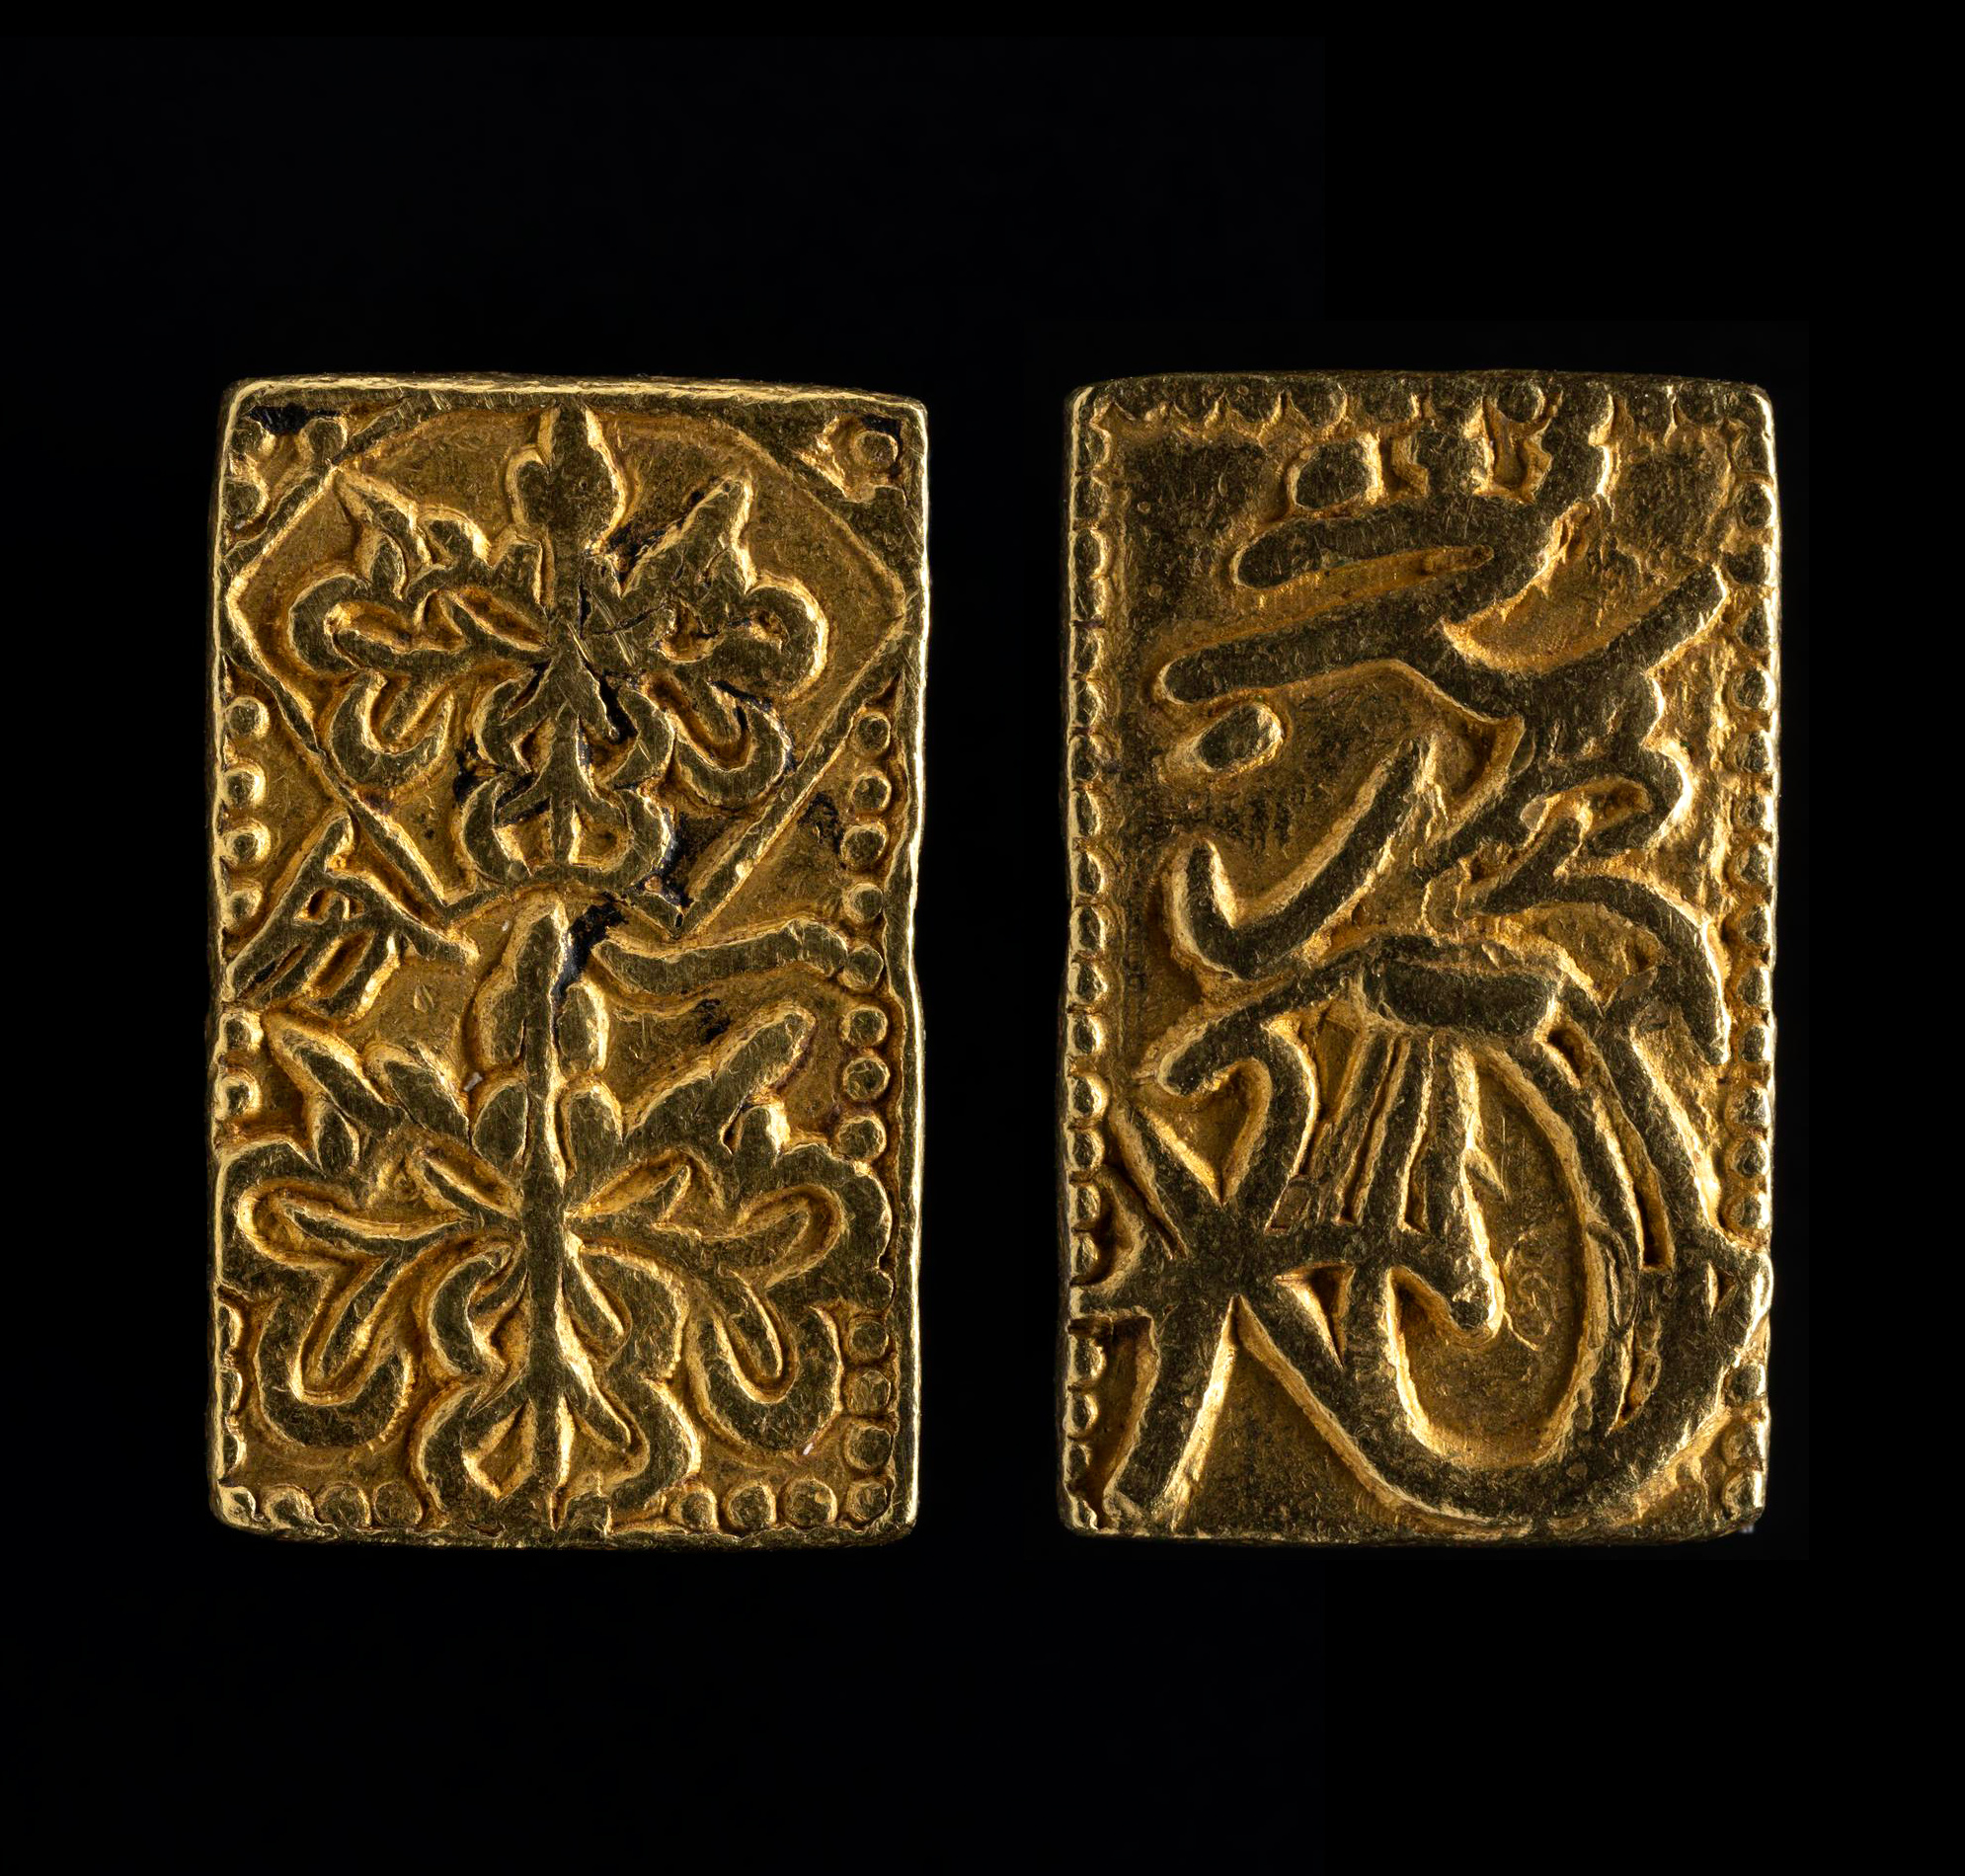 Gold coin worth 1 bu. Japan, Momoyama period, Keichō era, 1601.jpg